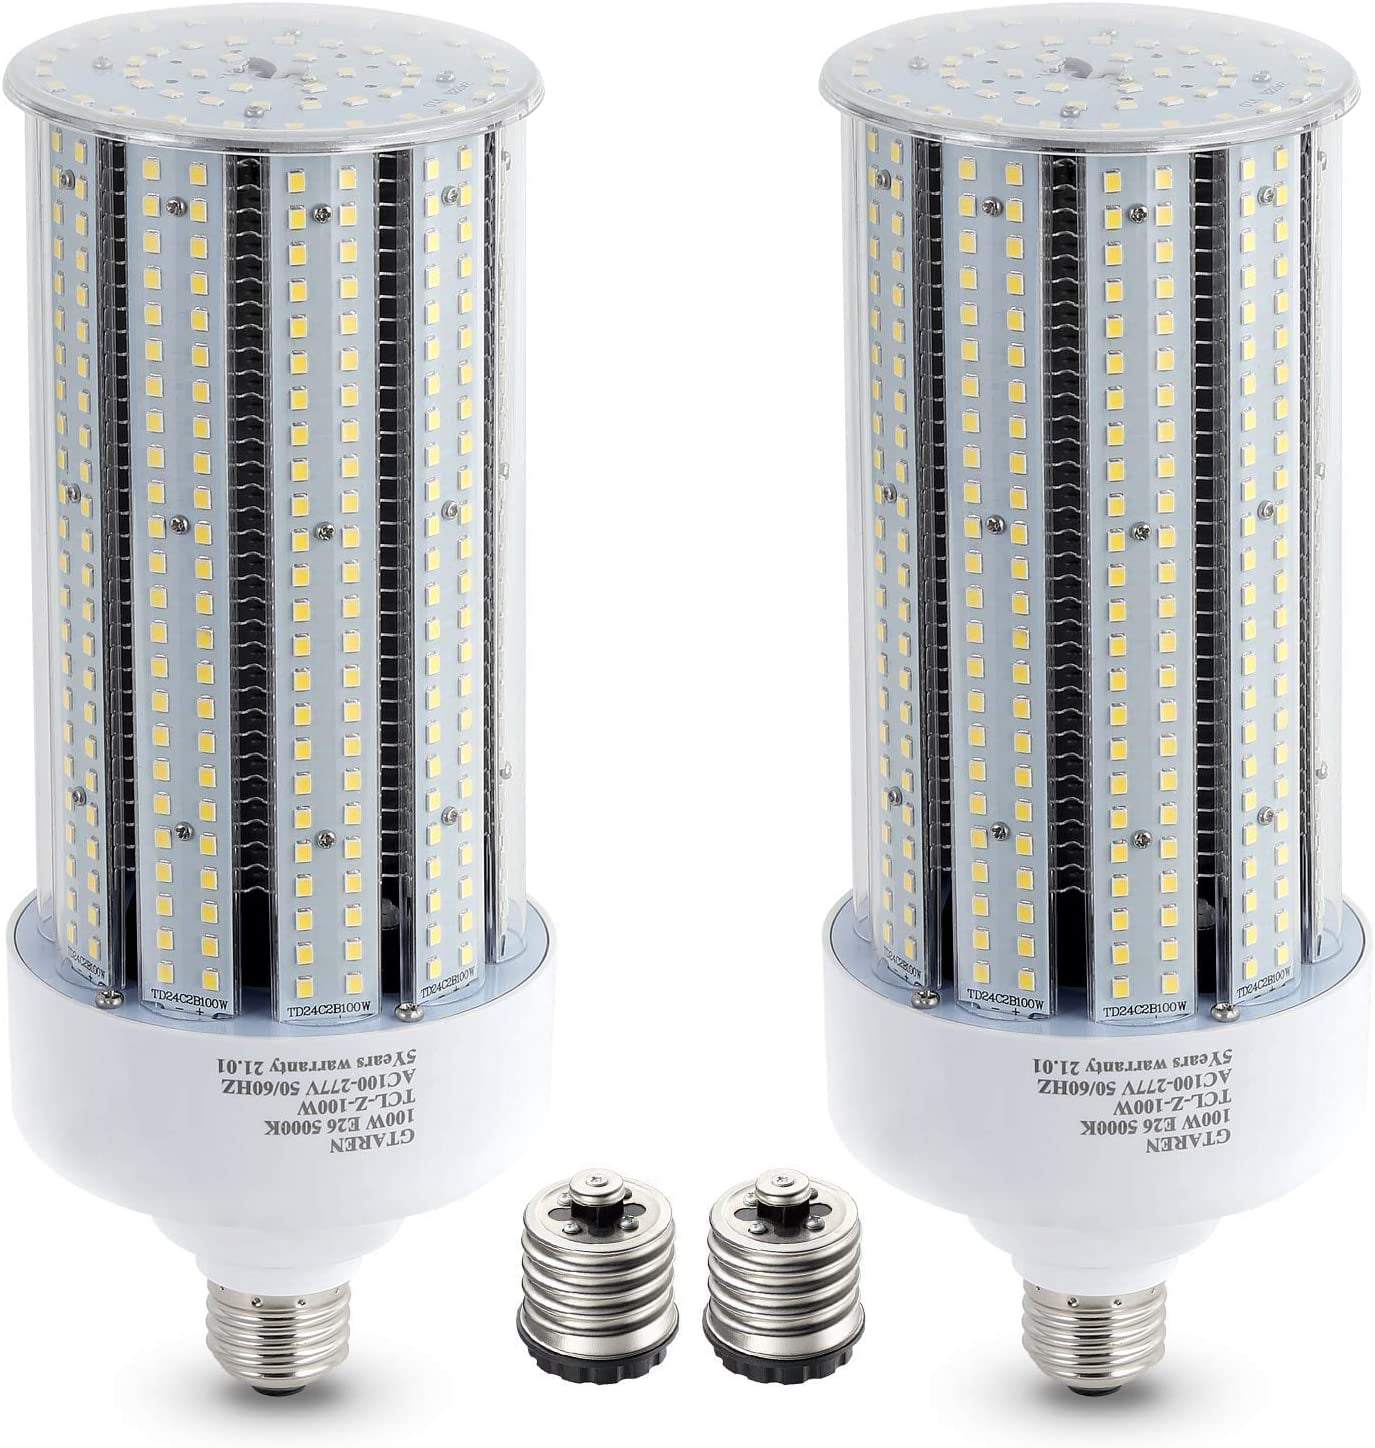 JESLED 200W LED Corn Light Bulb E26 E39 Base 5000K 6000K Shop Workshop Lighting 